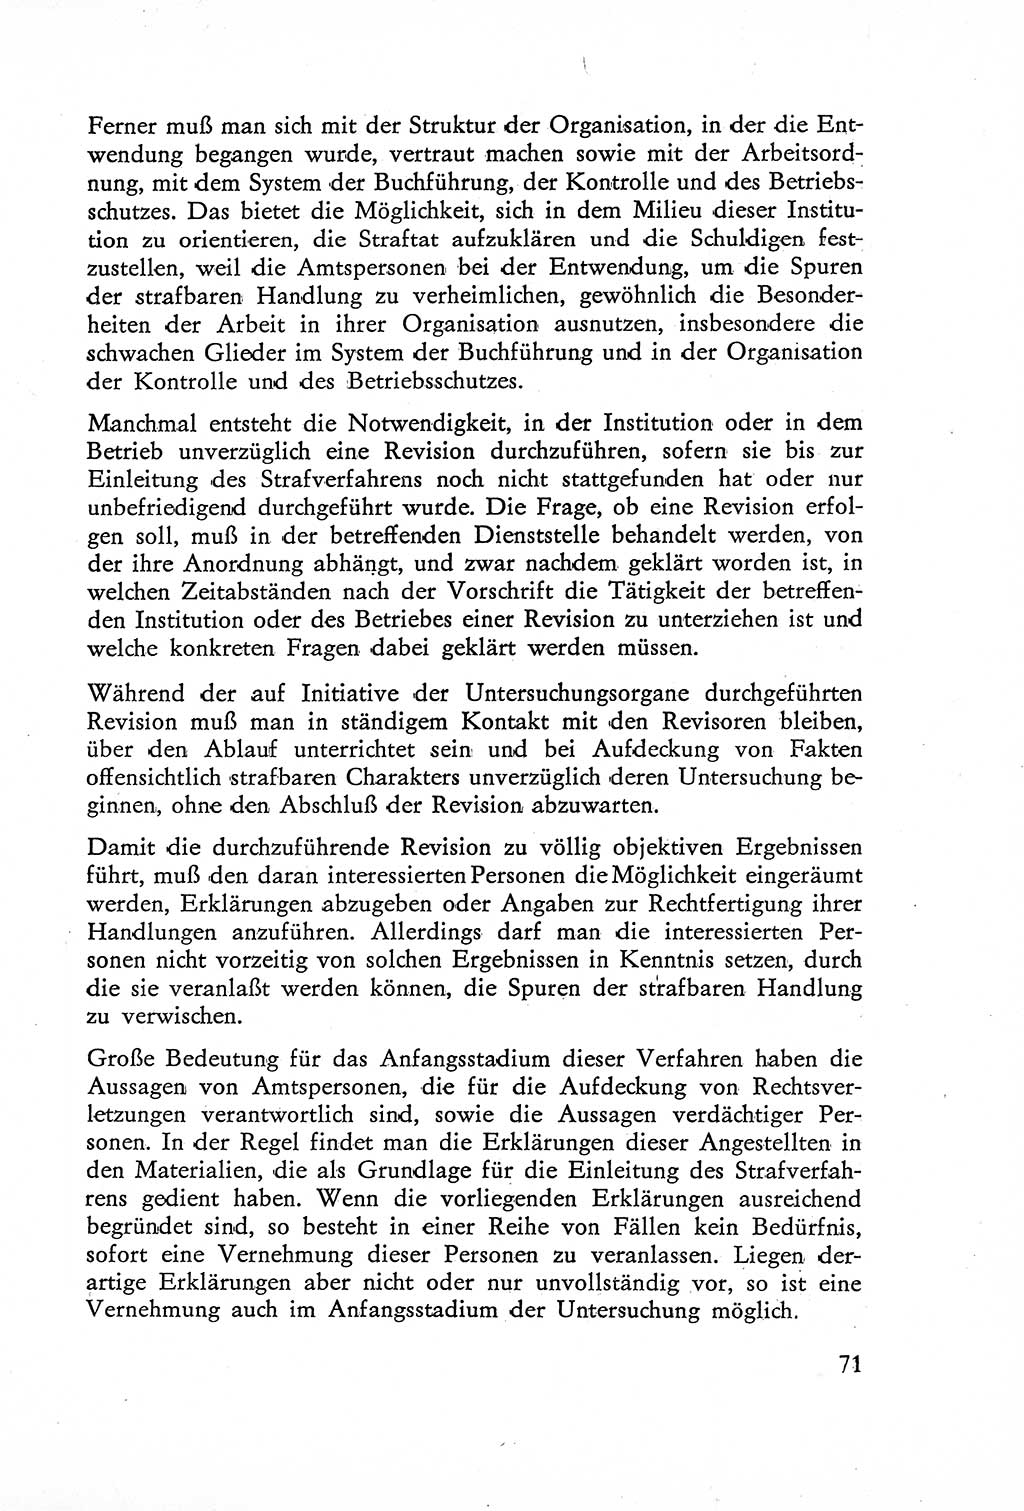 Die Untersuchung einzelner Verbrechensarten [Deutsche Demokratische Republik (DDR)] 1960, Seite 71 (Unters. Verbr.-Art. DDR 1960, S. 71)